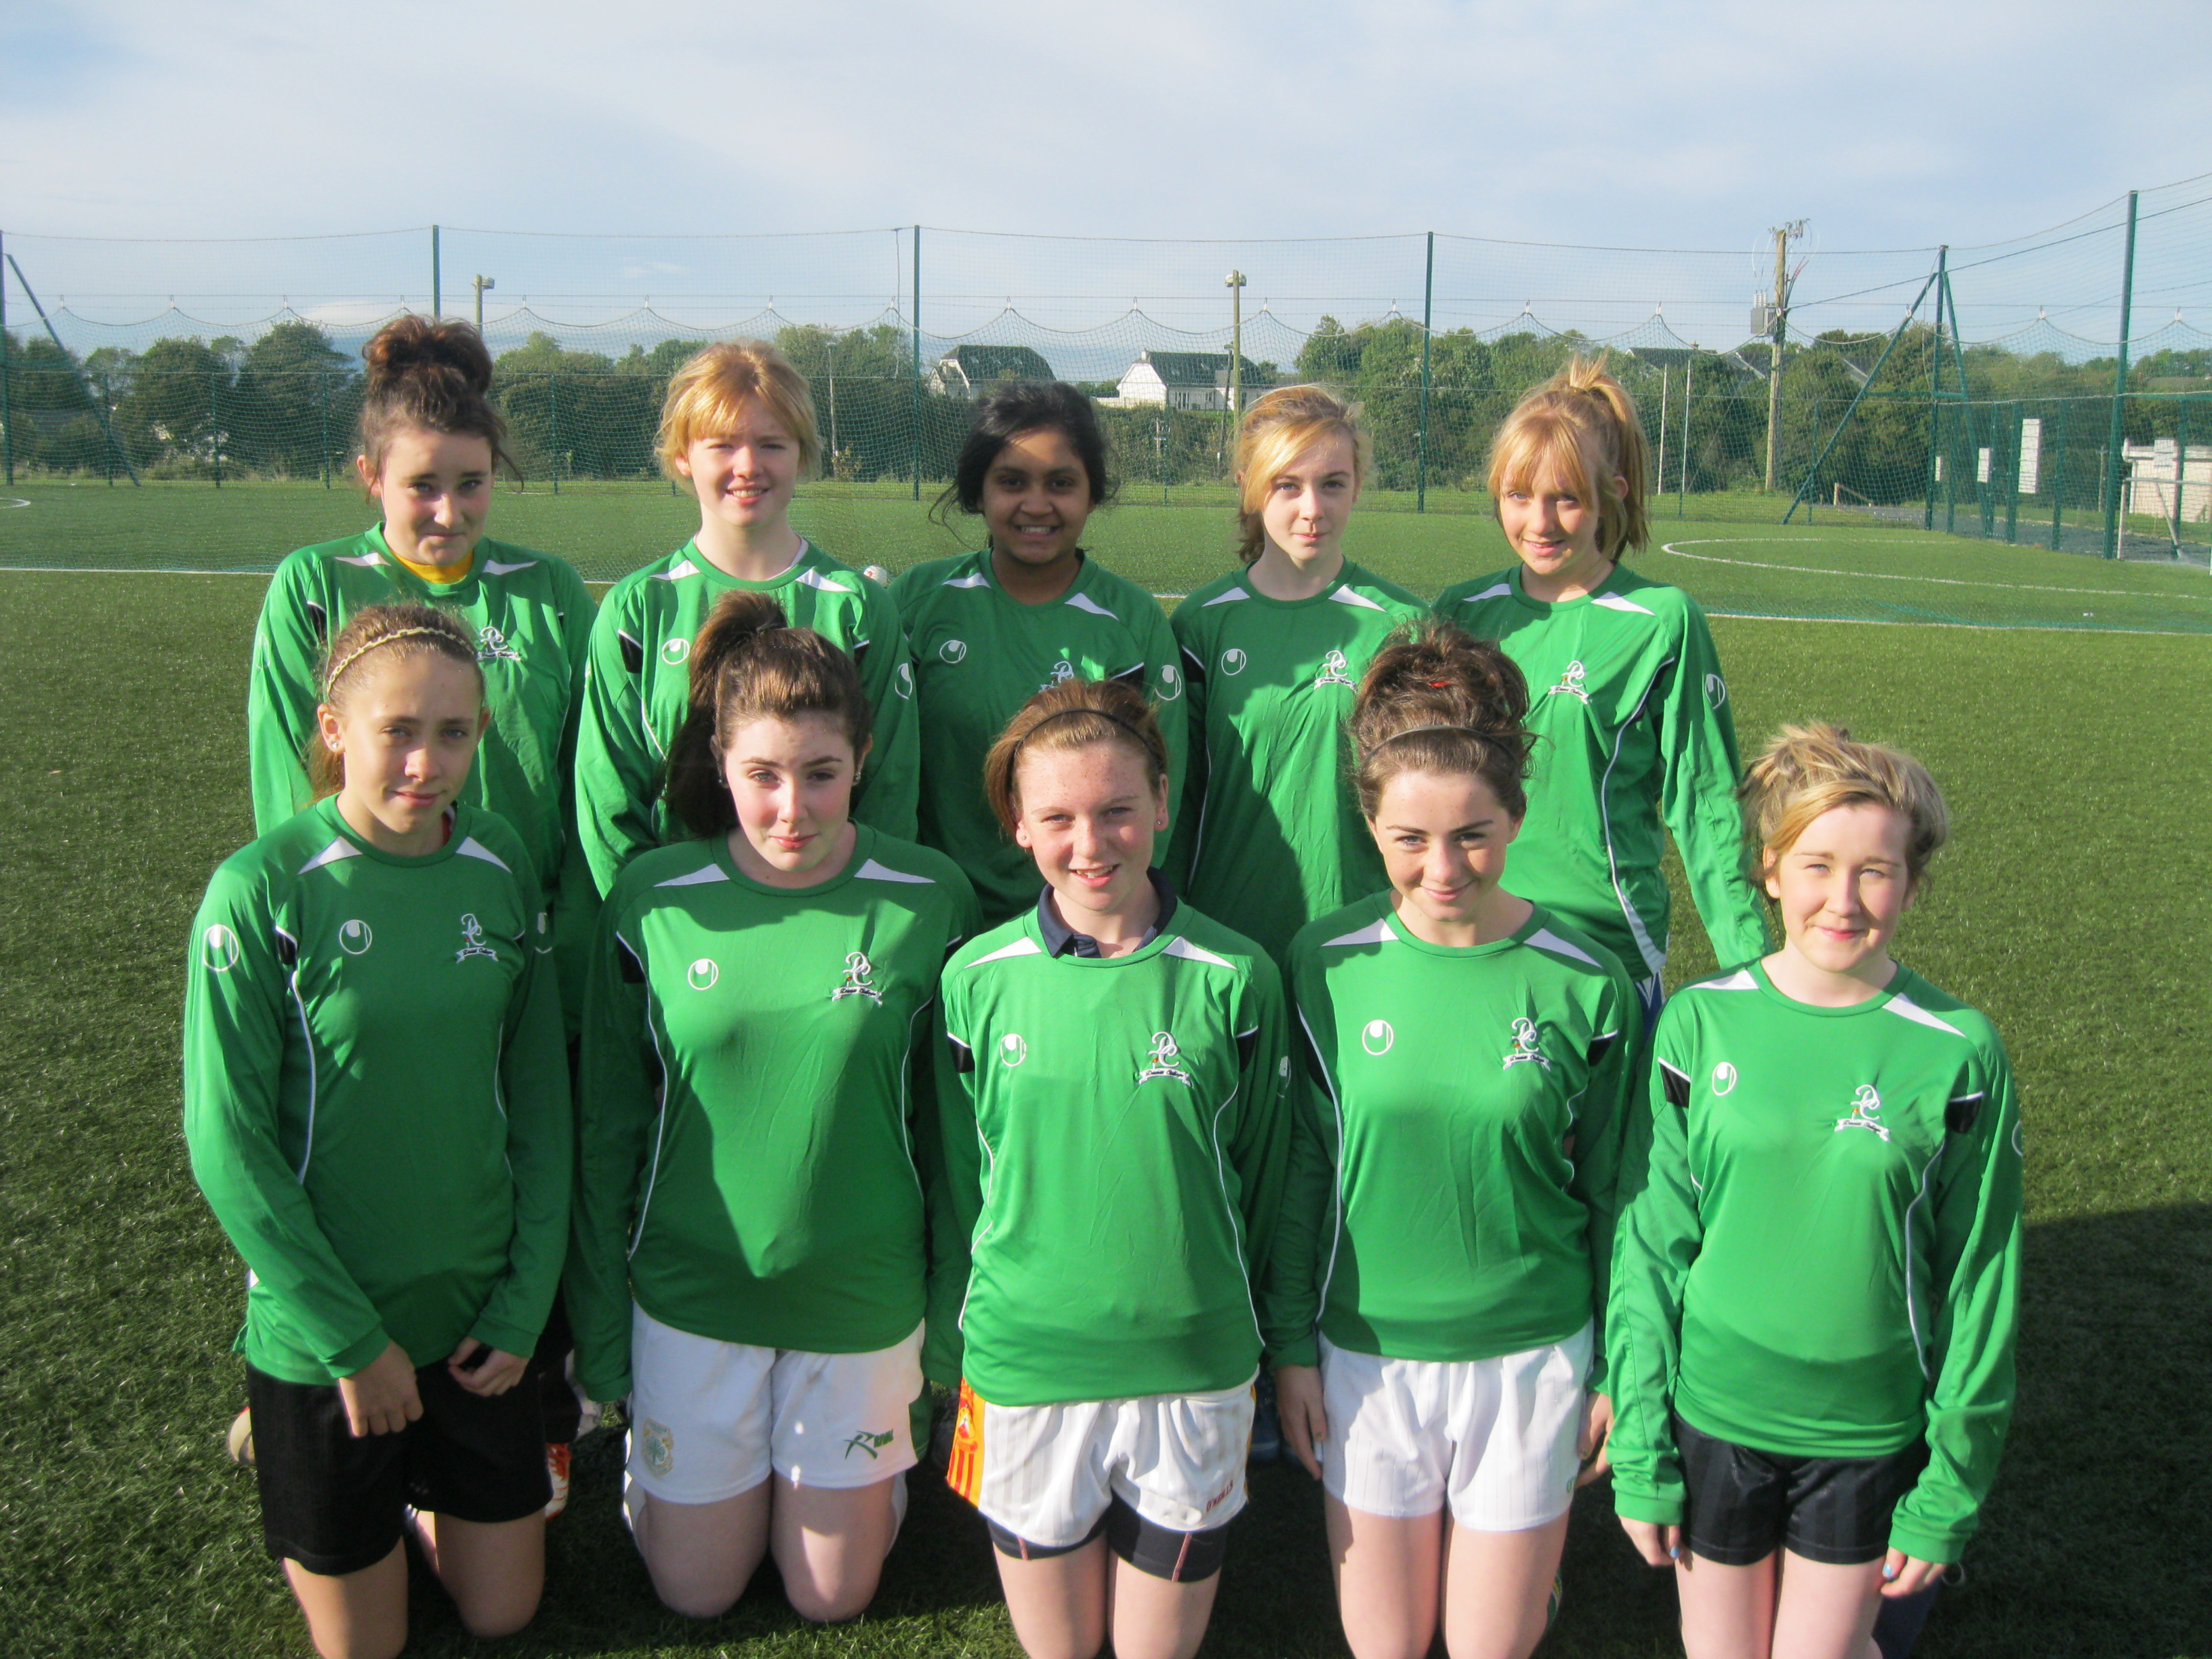 2nd Yr Girls 7-a-side Soccer Team